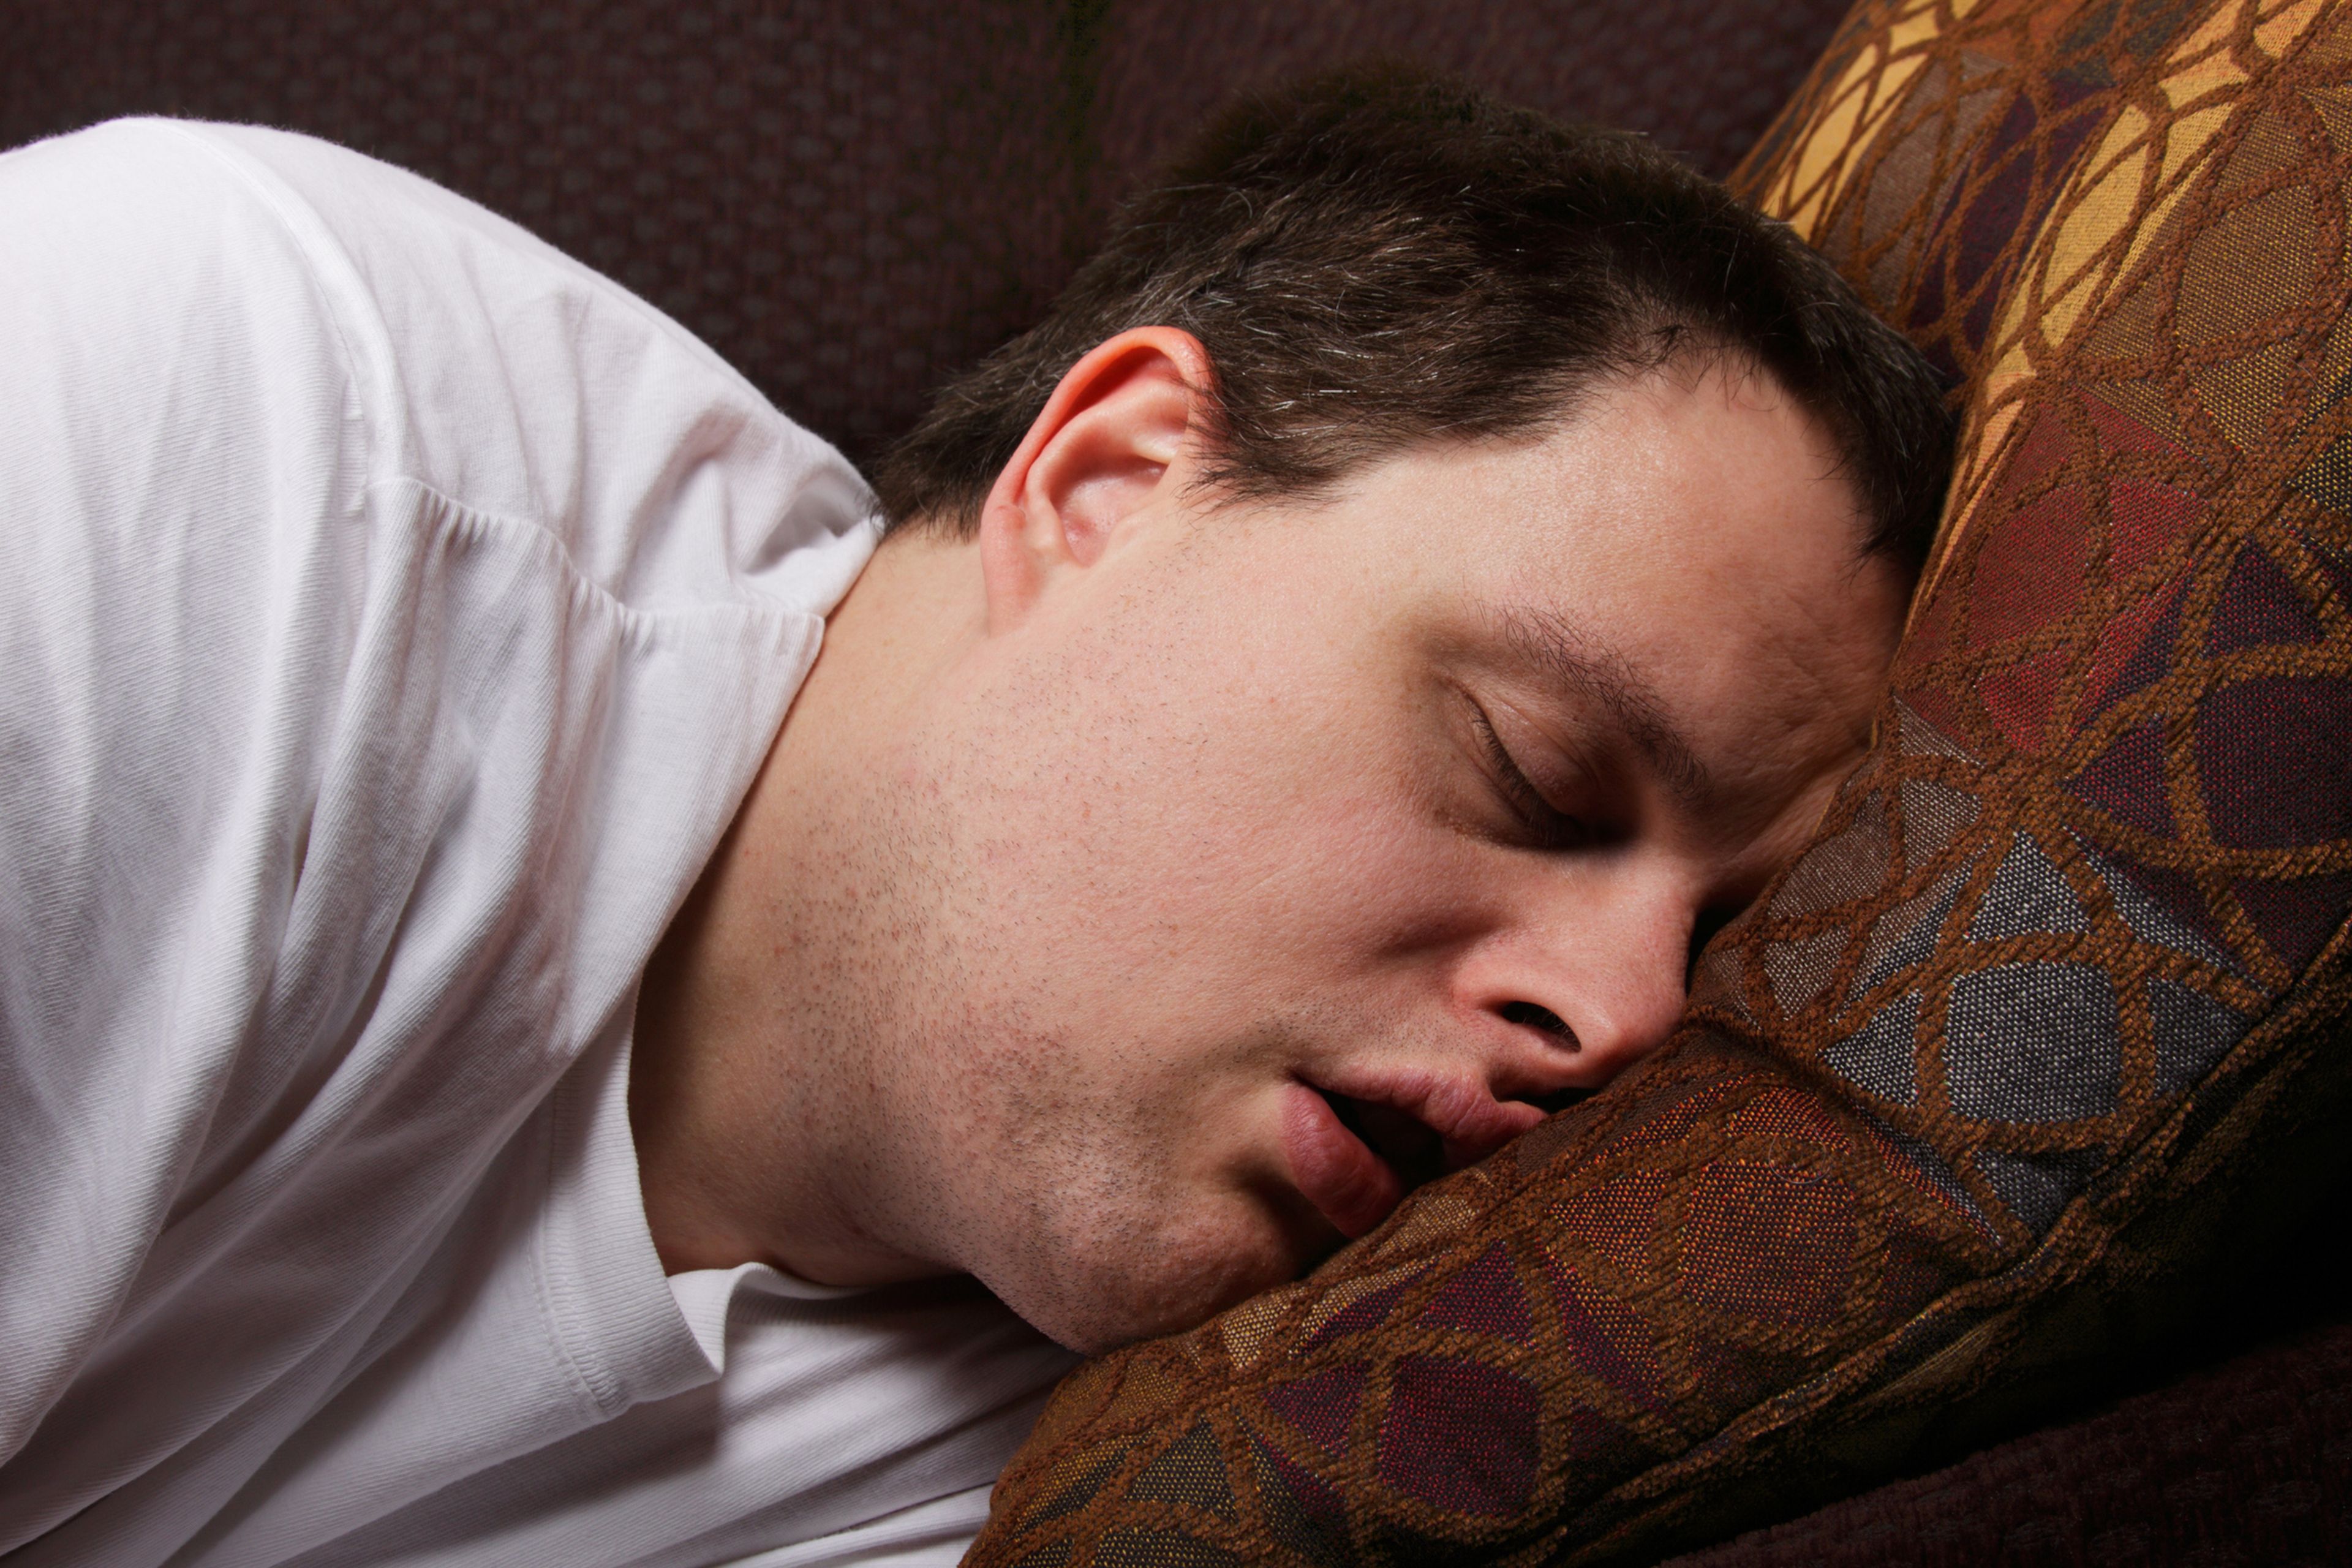 tomar el pelo Largo India Qué hacer para evitar roncar al dormir: 8 trucos caseros para lograrlo |  Business Insider España